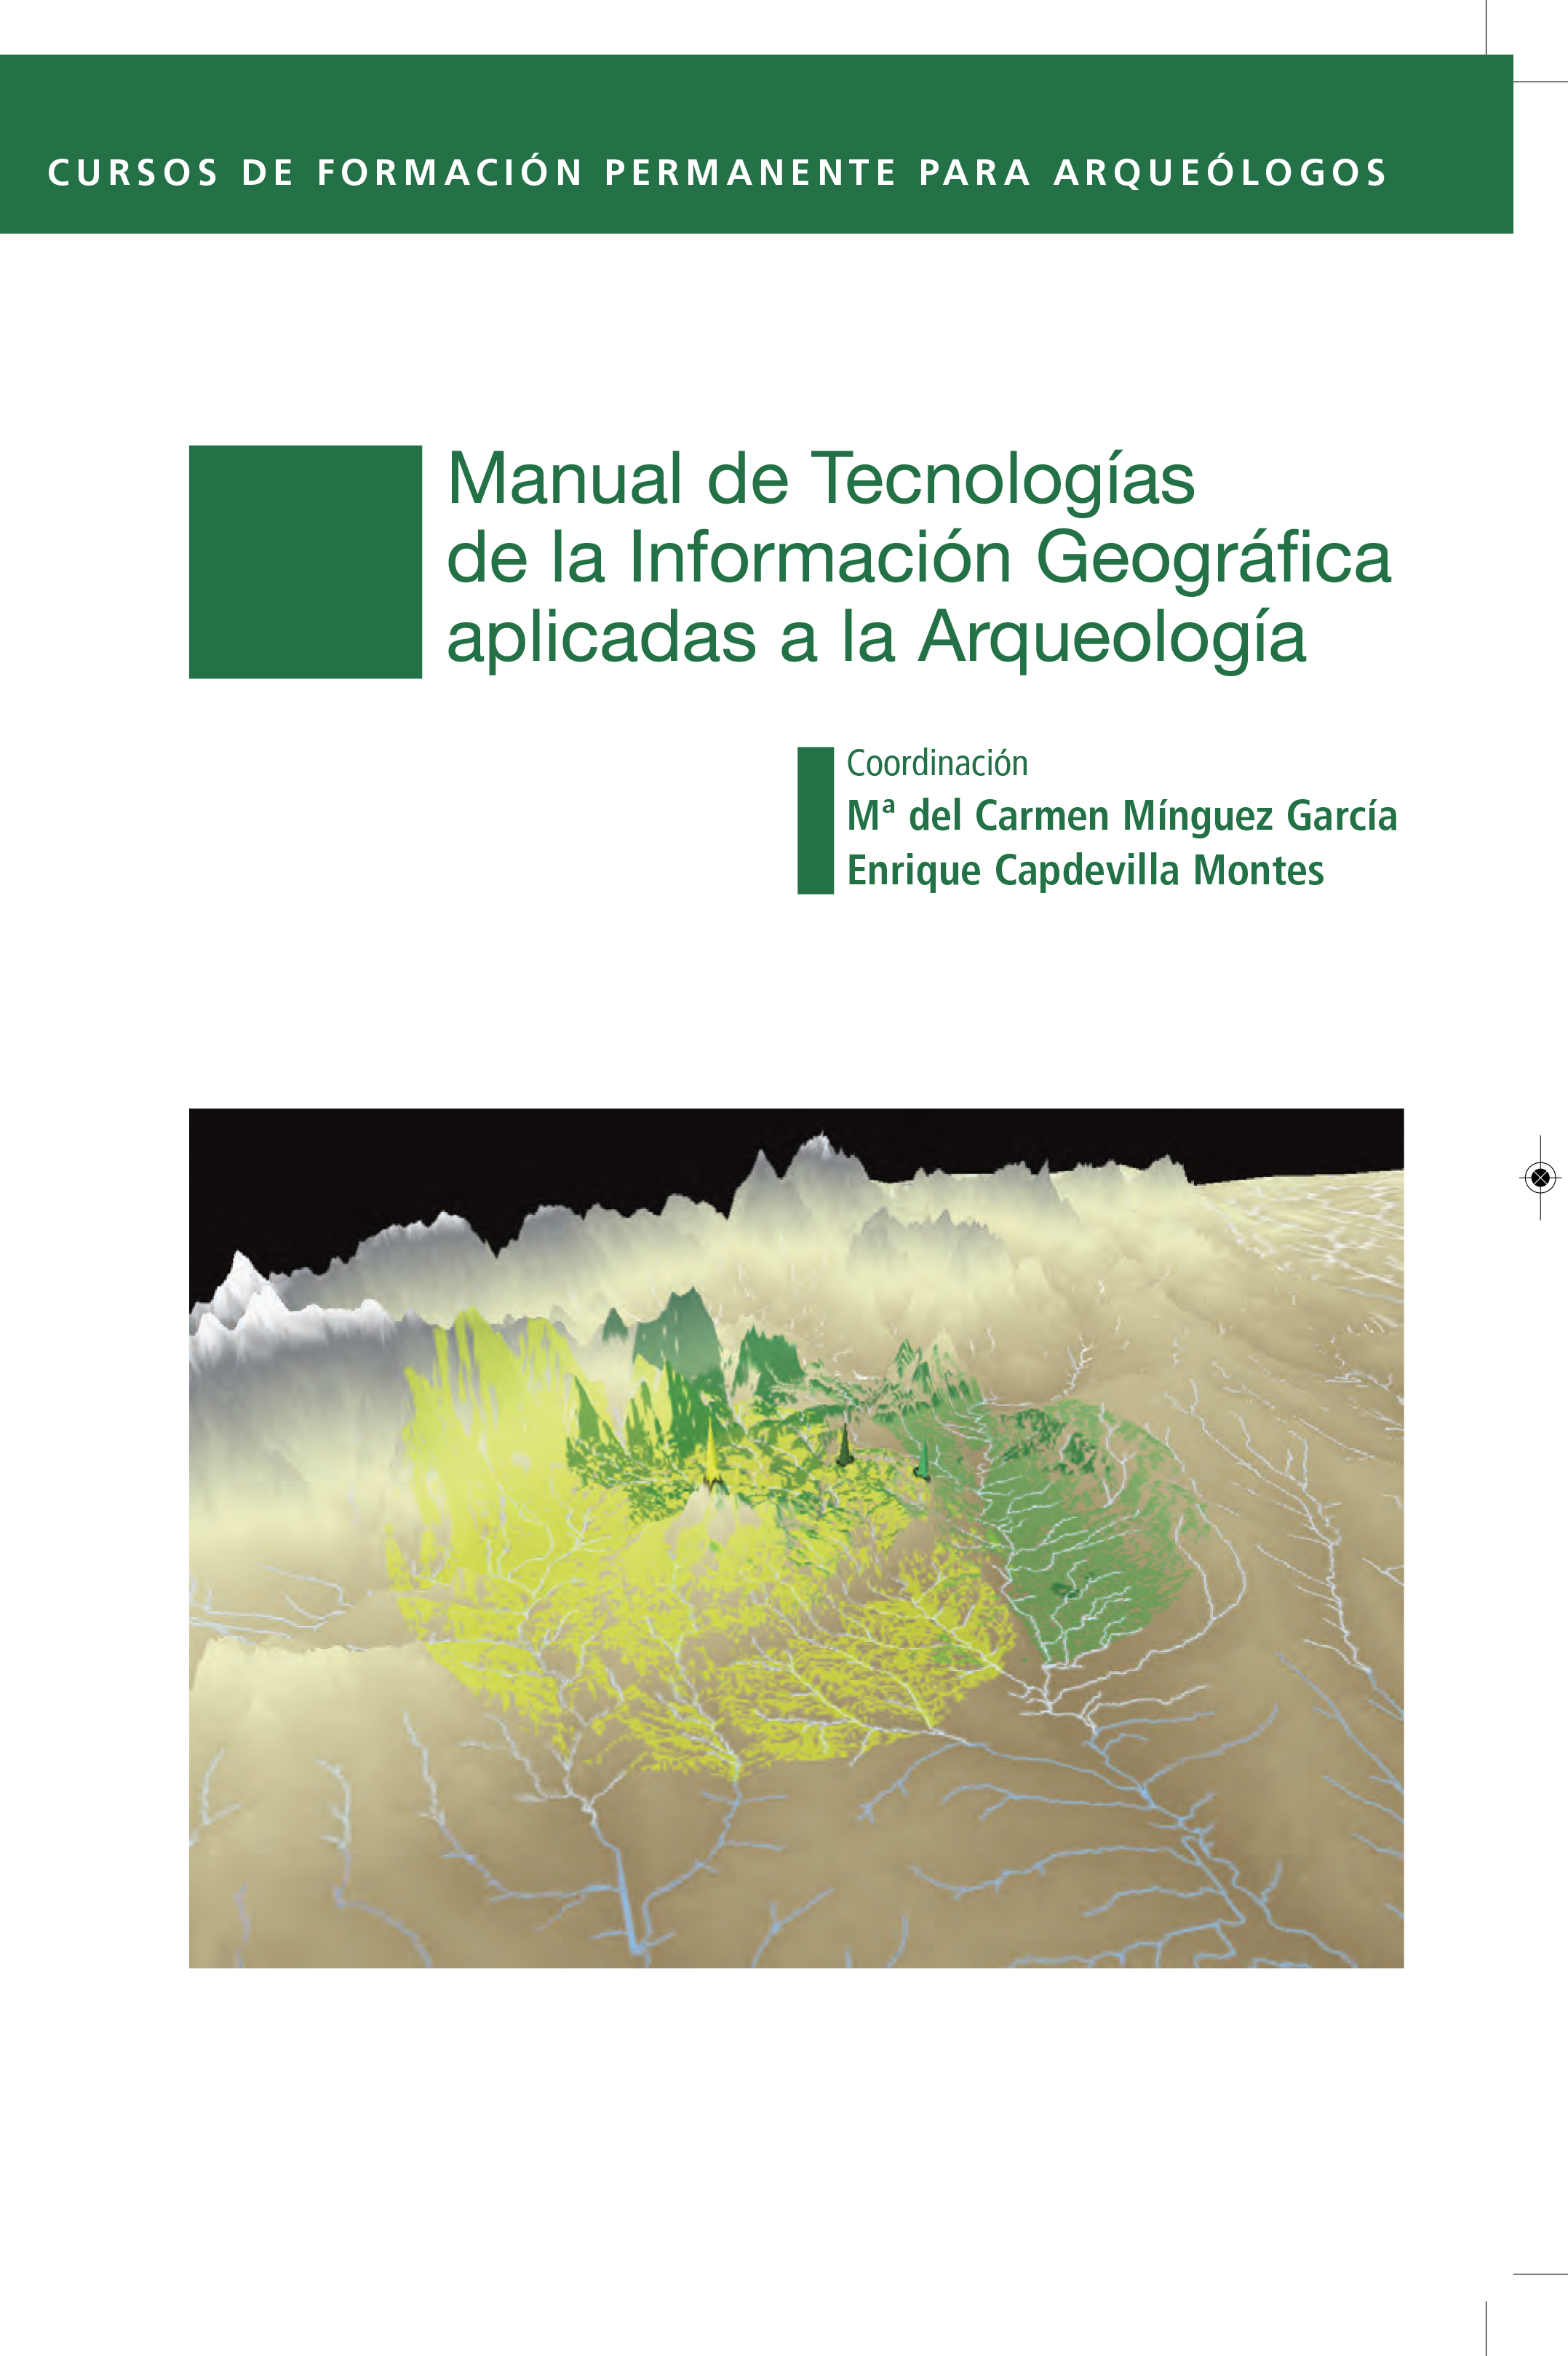 Presentación del Manual de Tecnologías de la Información Geográfica aplicadas a Arqueología - 1